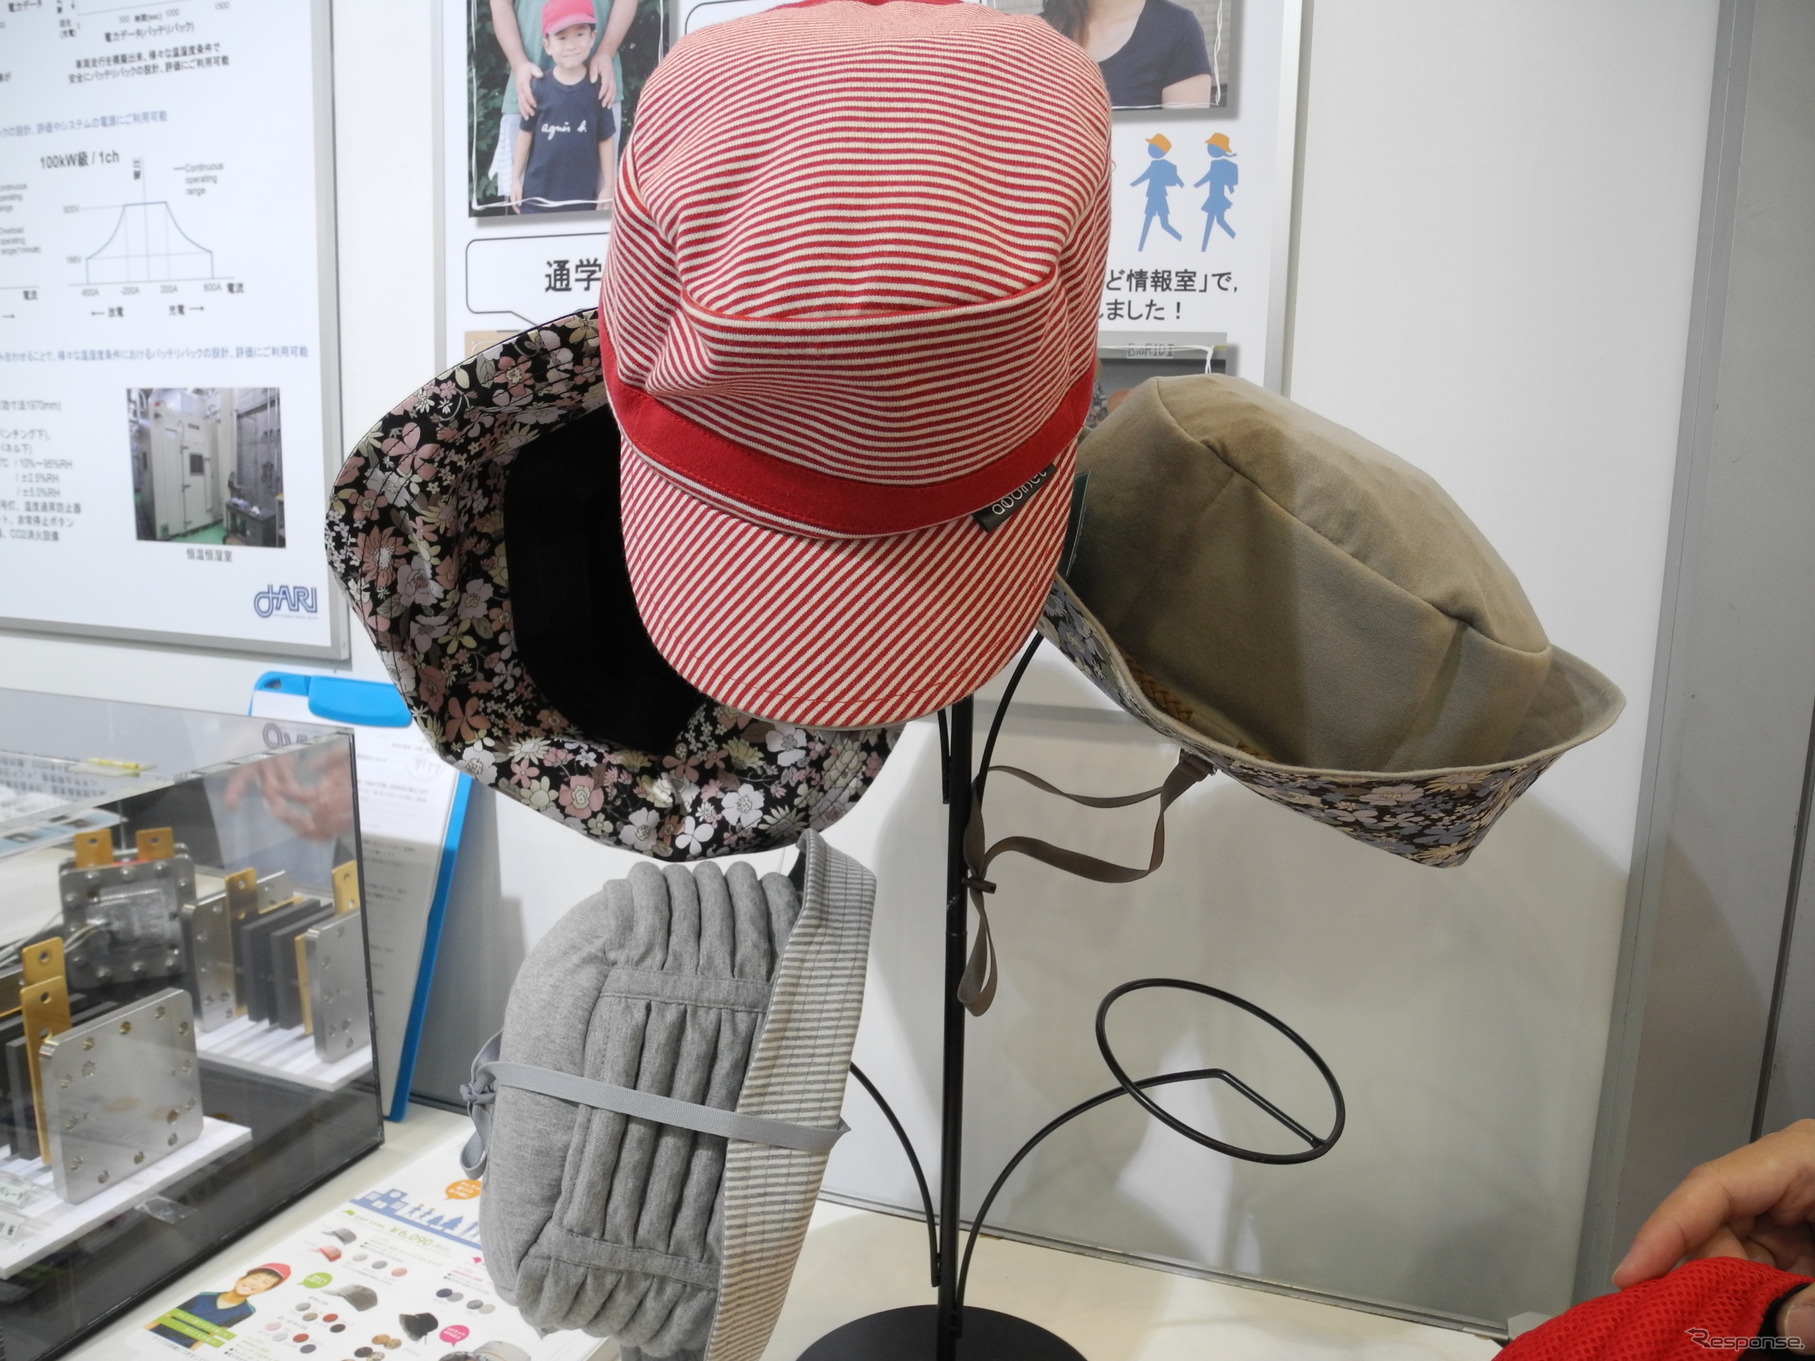 日本自動車研究所と特殊衣料が共同開発した衝撃から頭守る帽子「アボネット＋ジャリ」